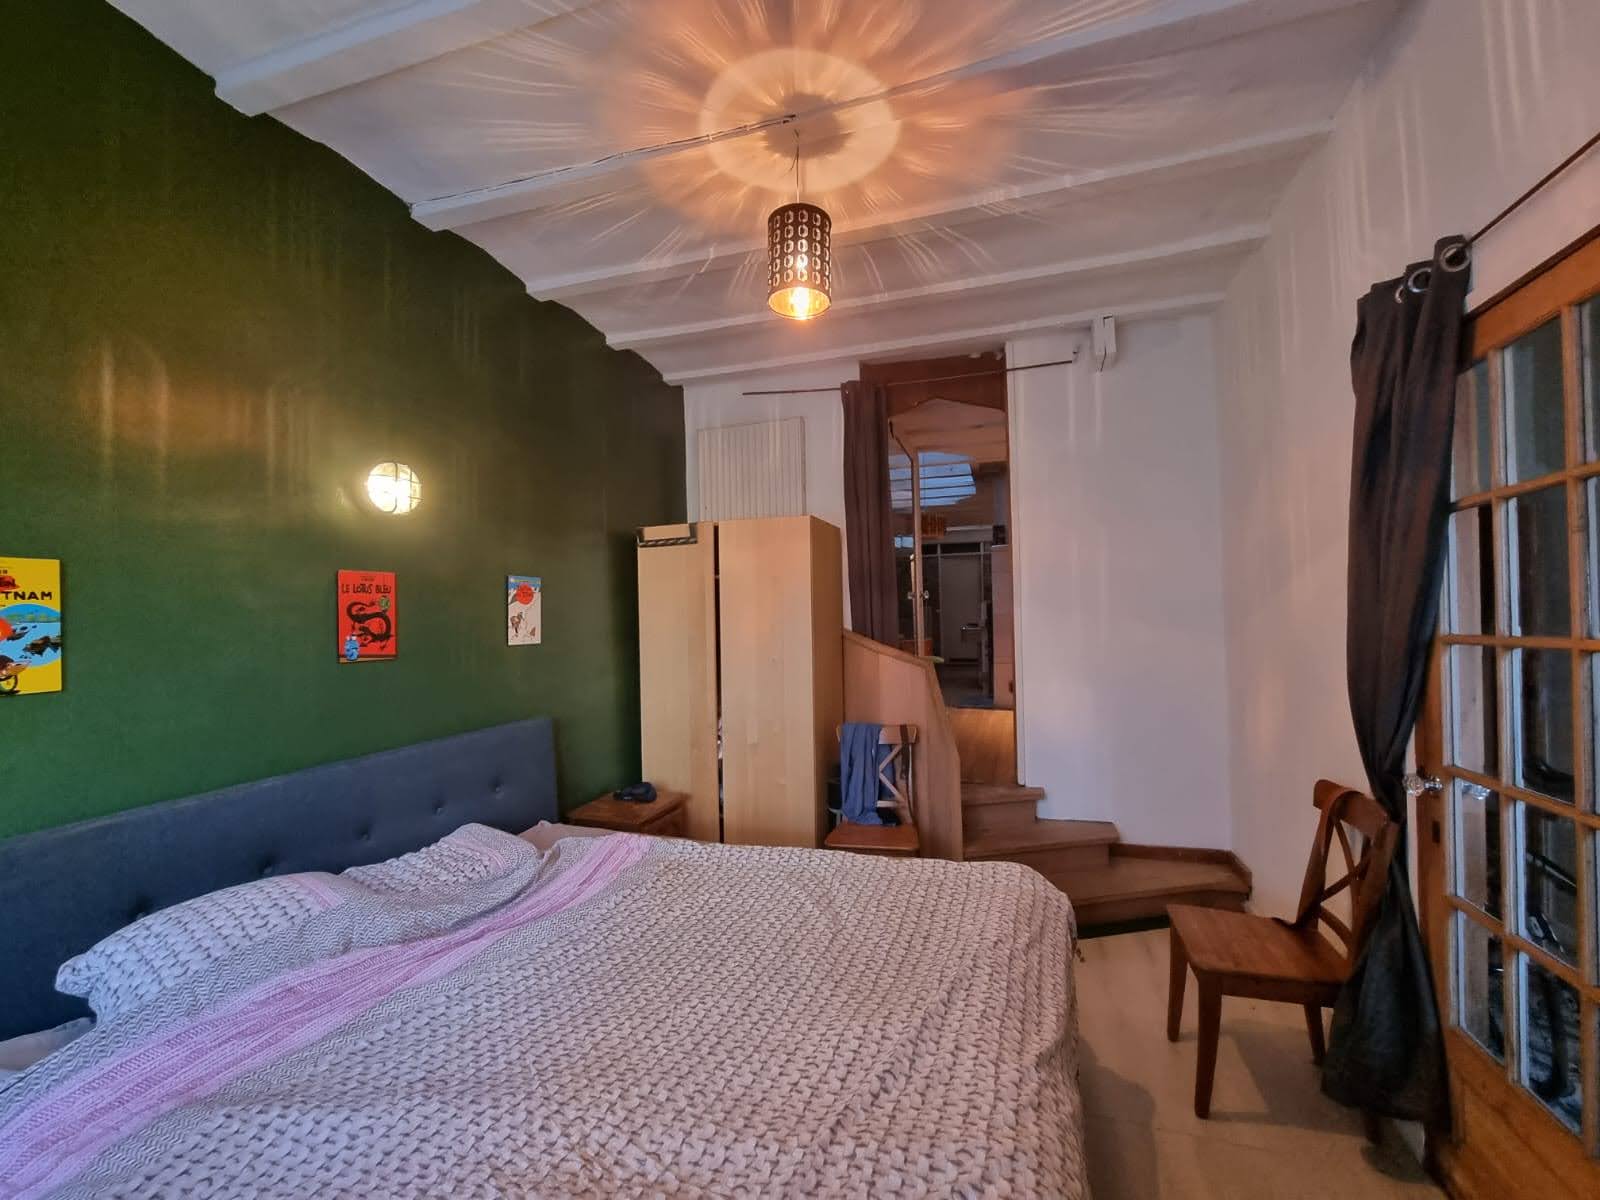 Driekoningen - Apartment for rent in Berchem, Antwerp bedroom 2